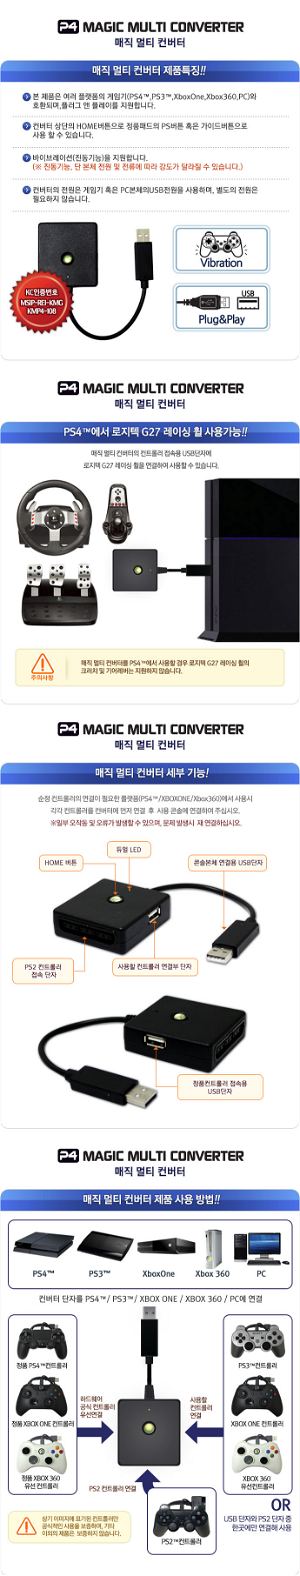 Magic Multi Converter